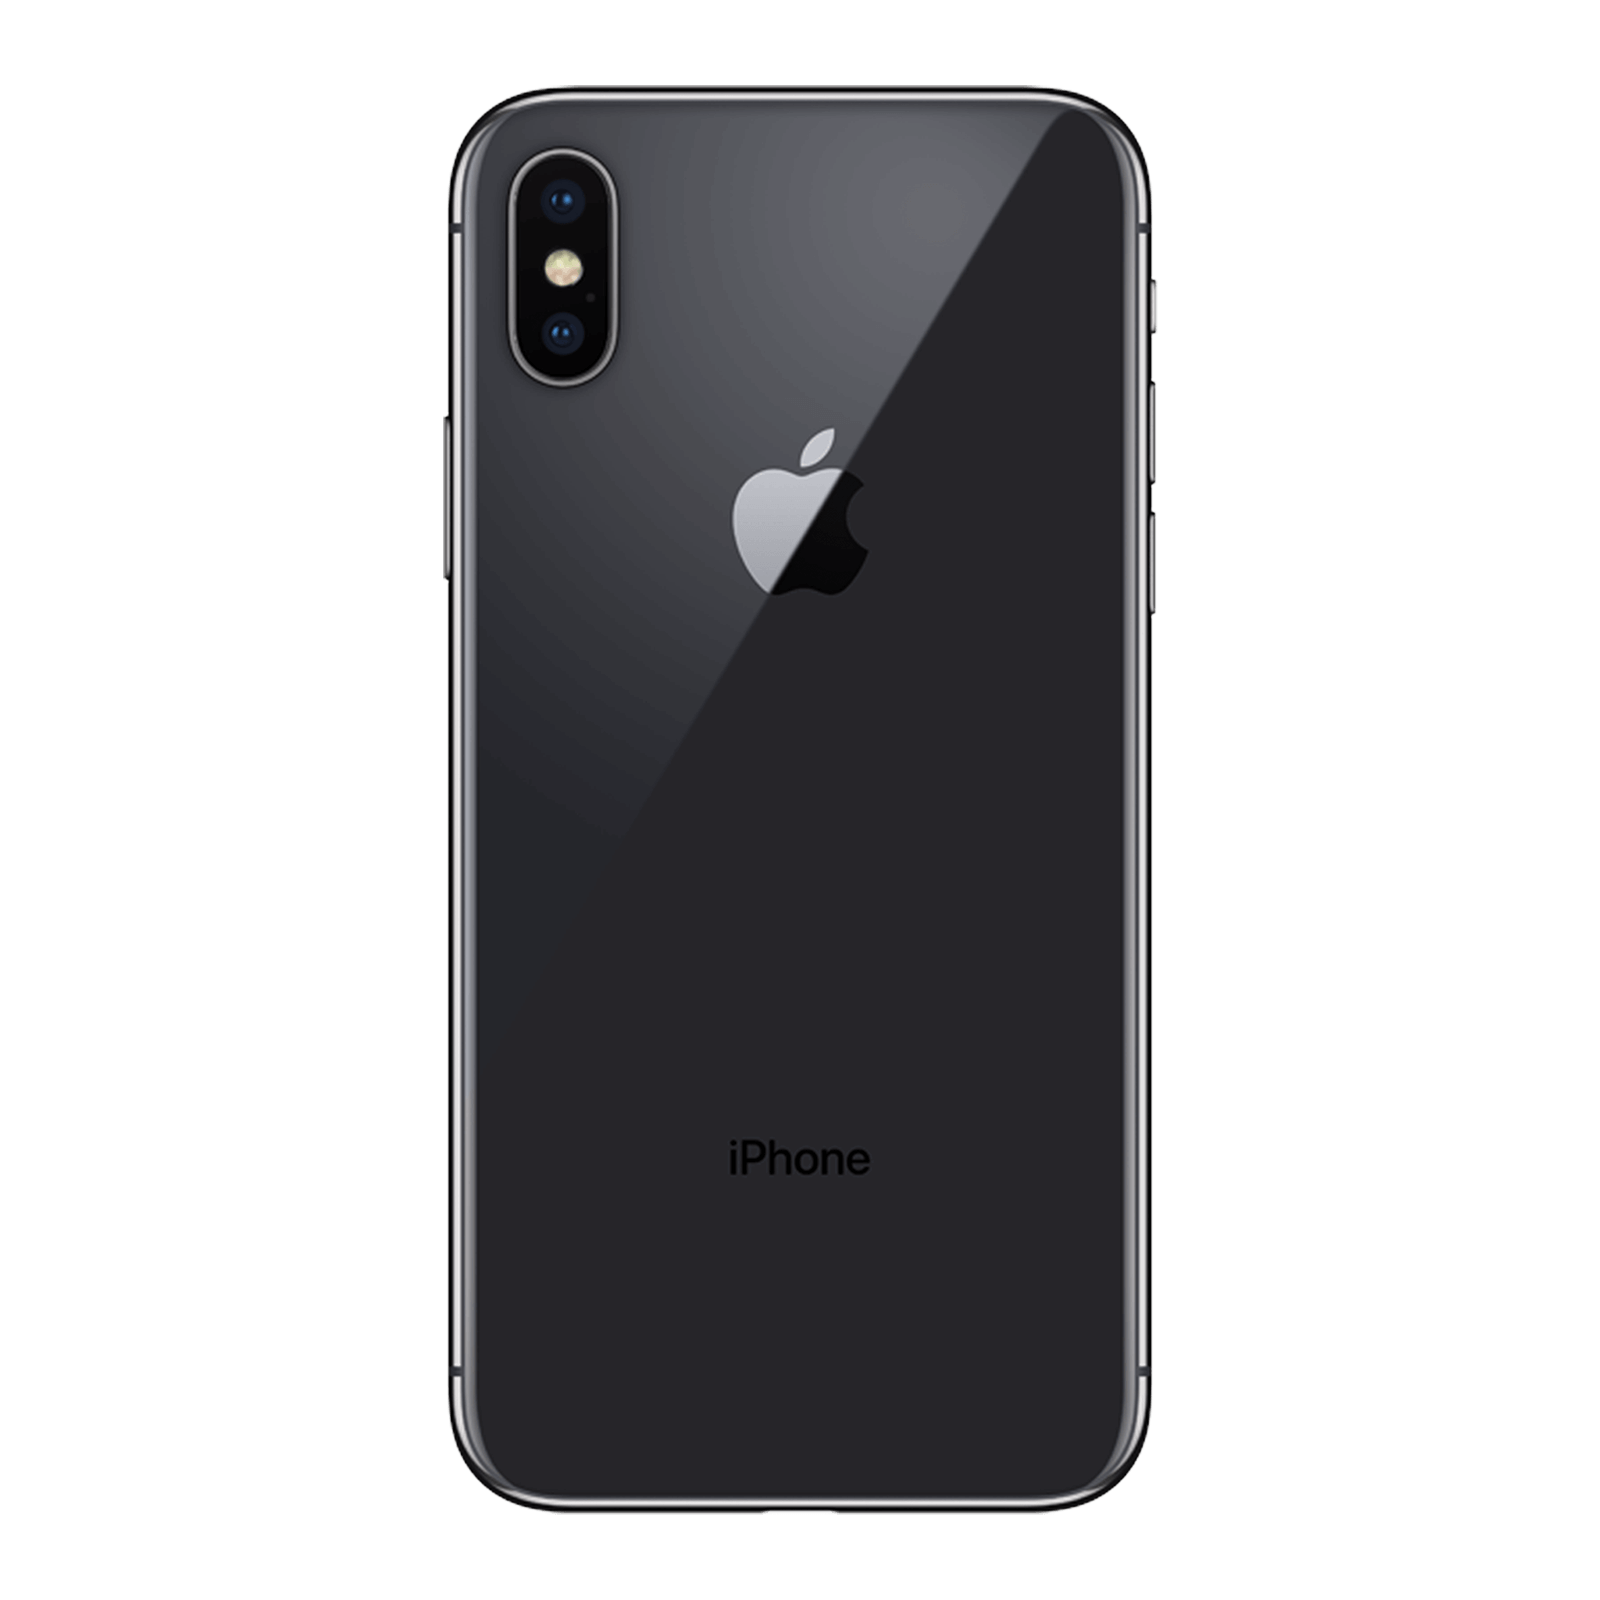 Apple iPhone X GB   Space Grey – Loop Mobile   AU